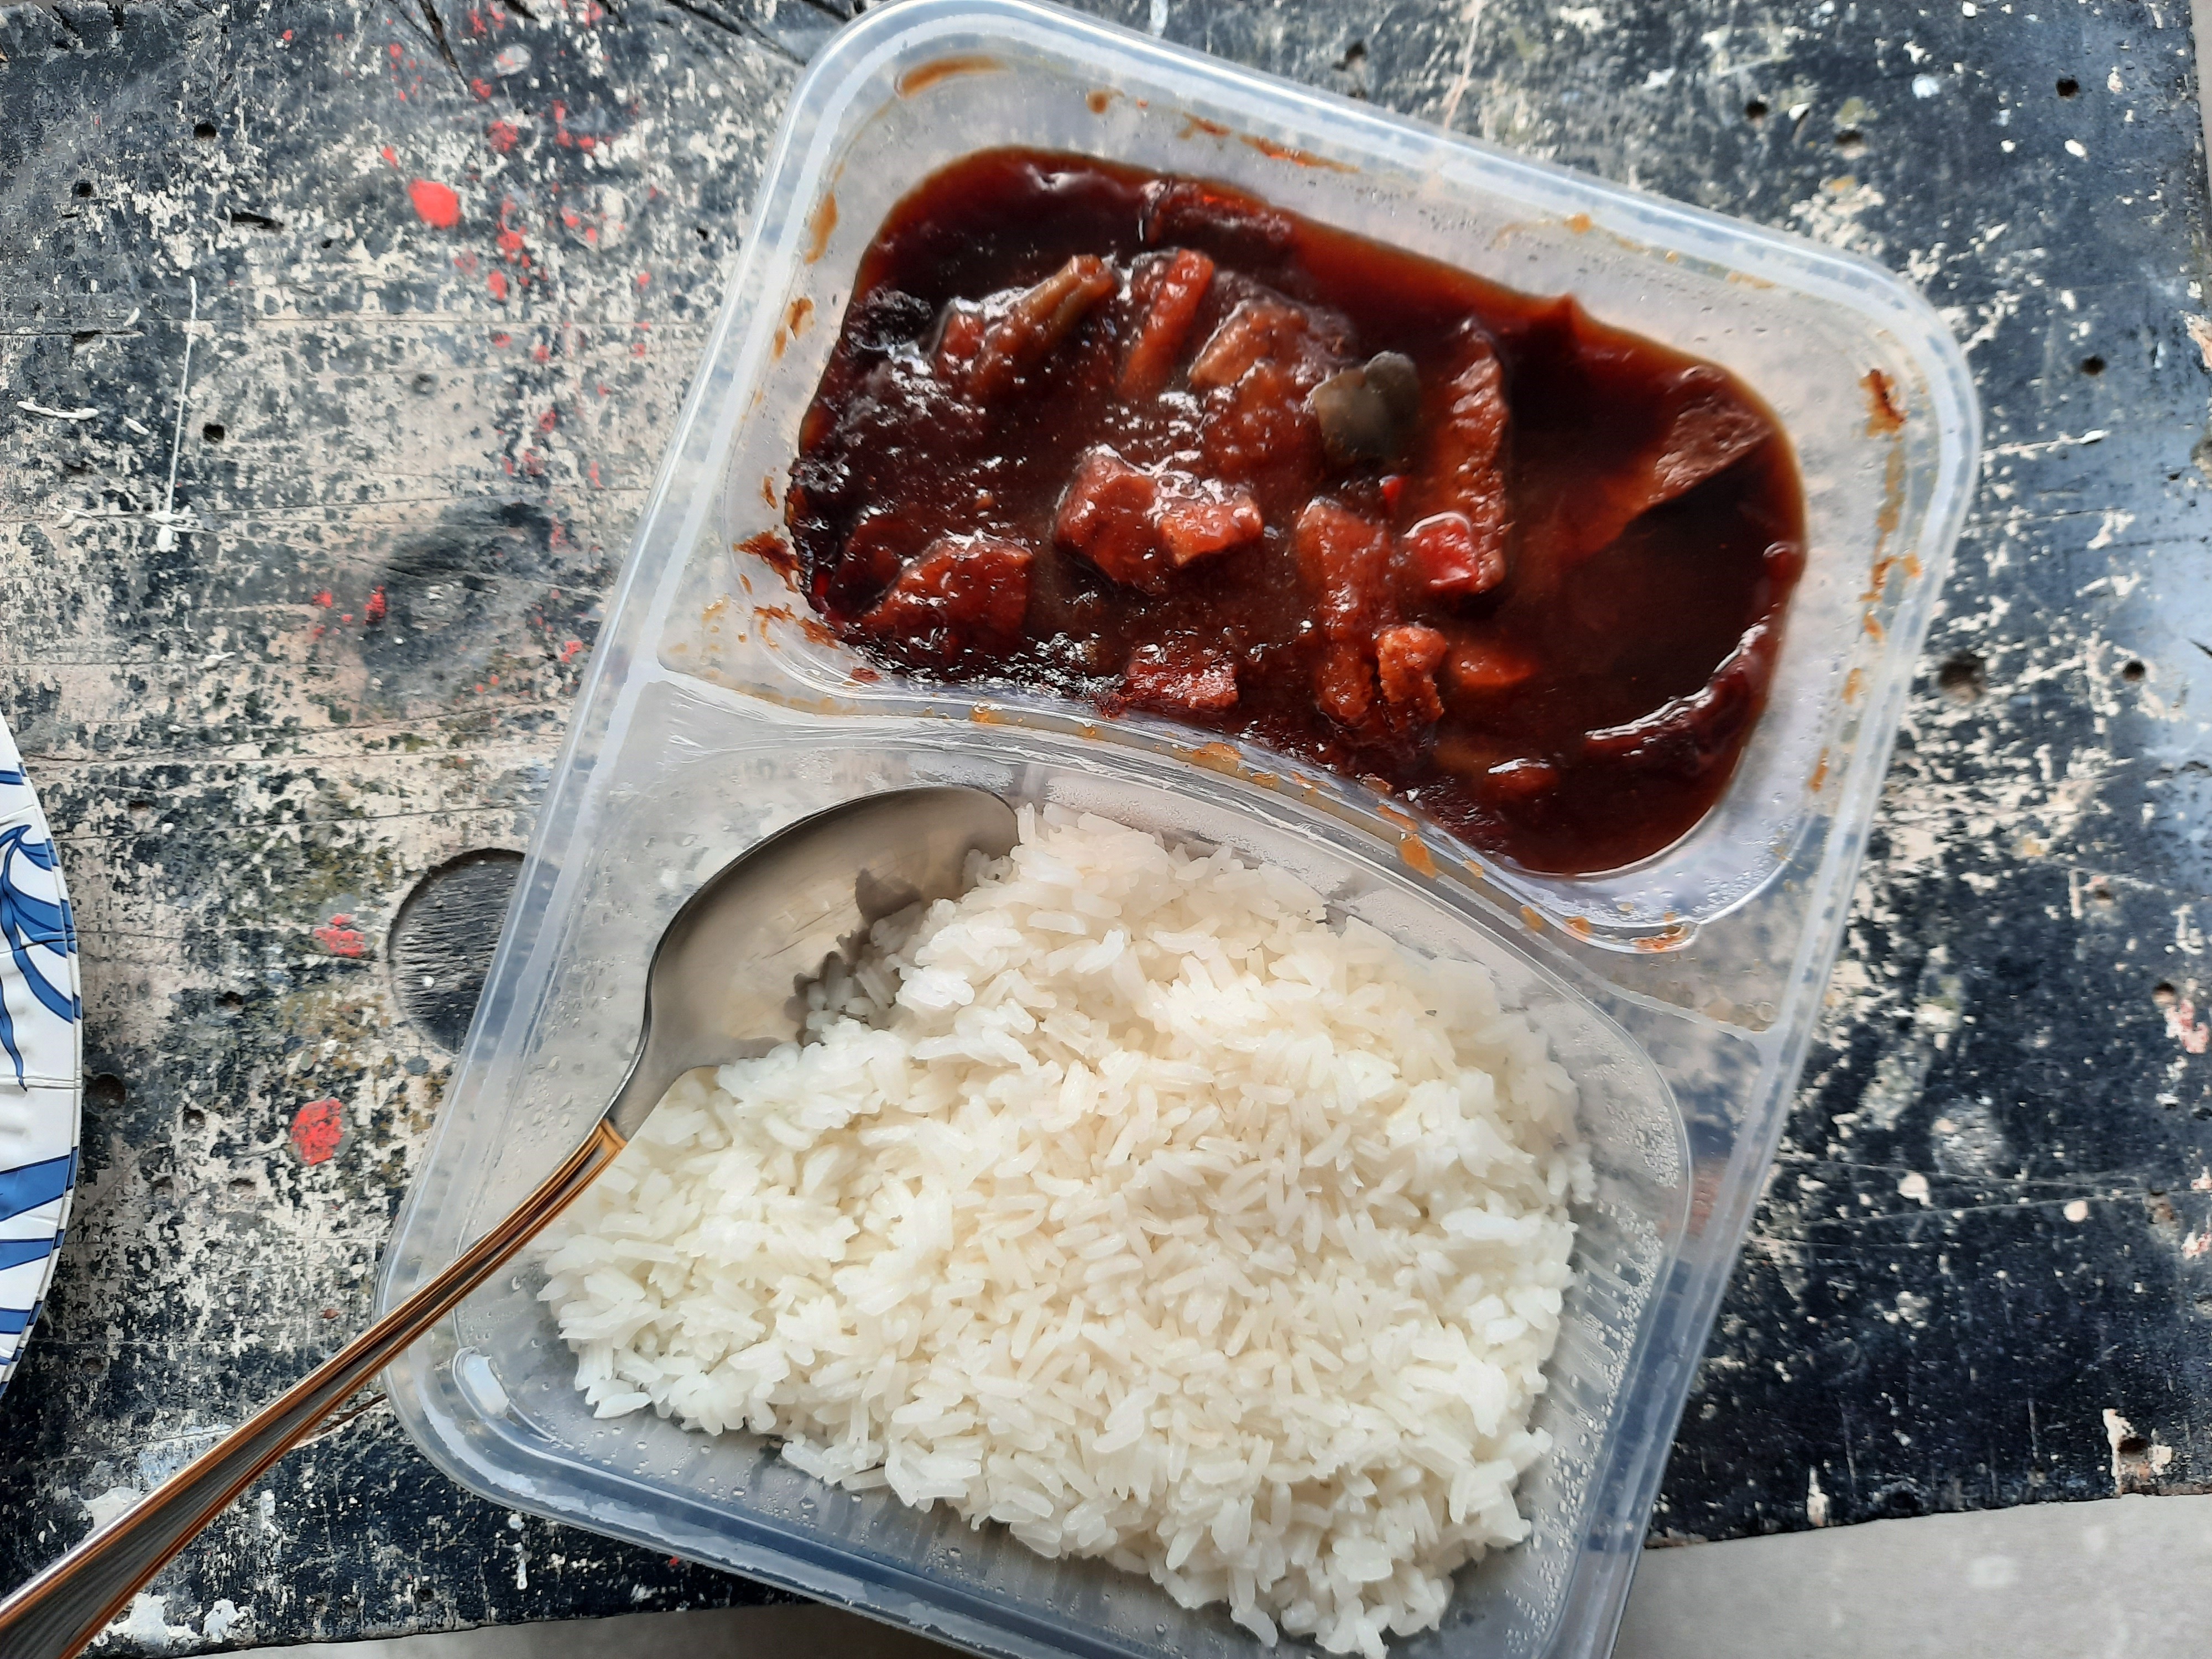 Verwonderlijk Kant & klaar #54: Babi ketjap met witte rijst van Lidl - Gewoon EQ-34